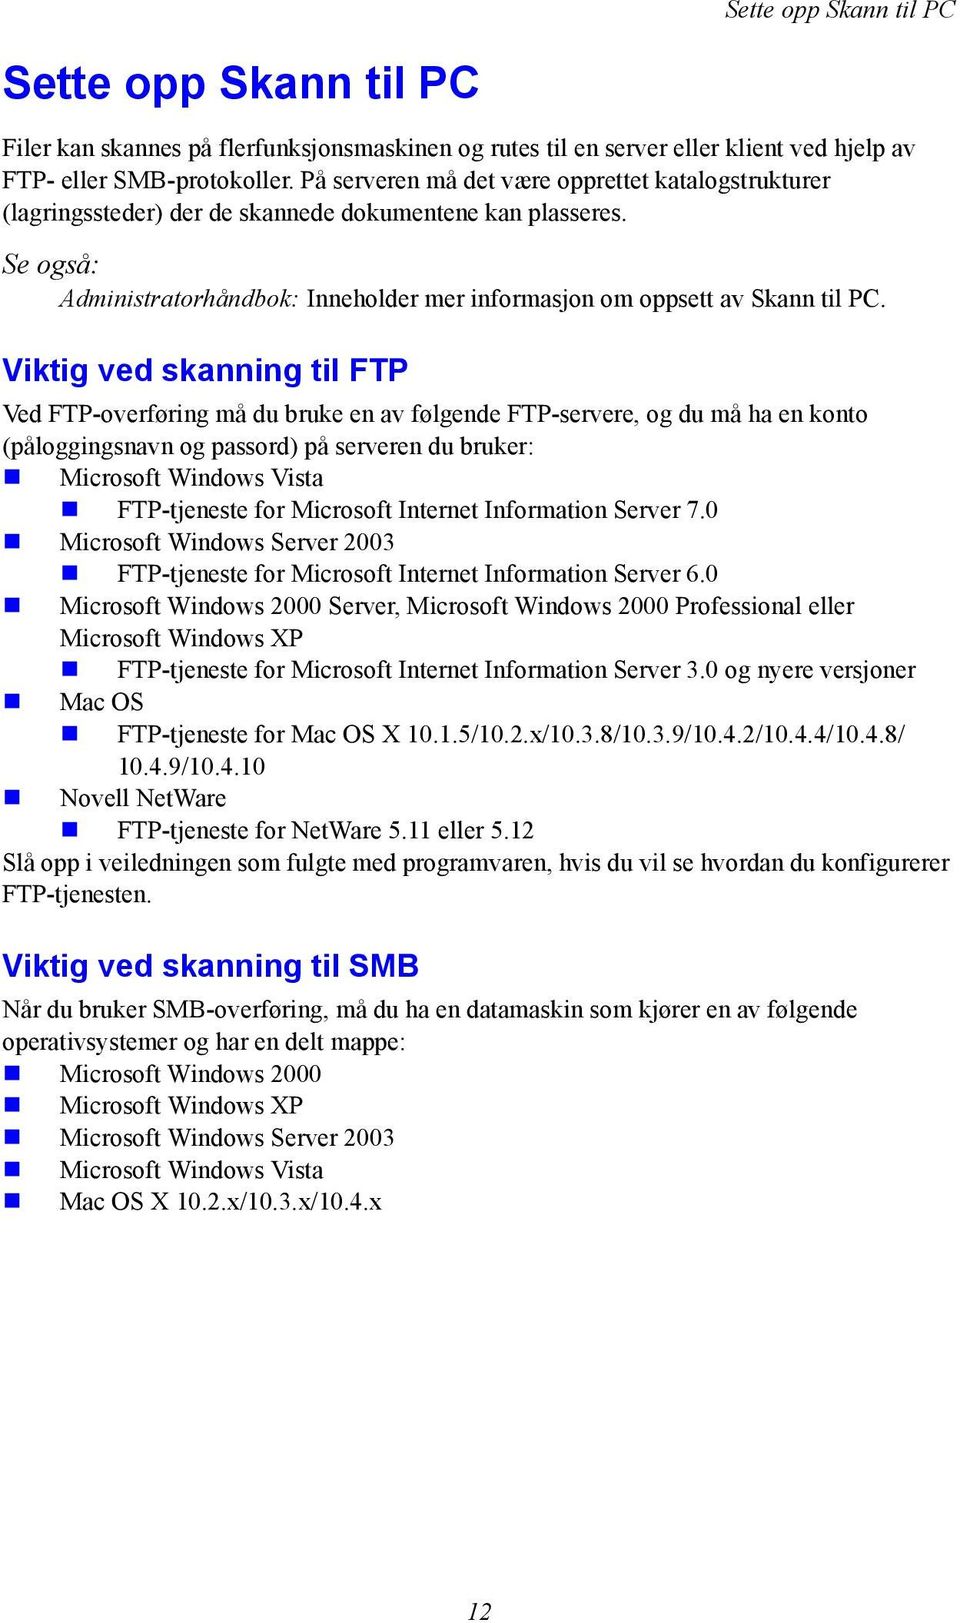 Viktig ved skanning til FTP Ved FTP-overføring må du bruke en av følgende FTP-servere, og du må ha en konto (påloggingsnavn og passord) på serveren du bruker: Microsoft Windows Vista FTP-tjeneste for